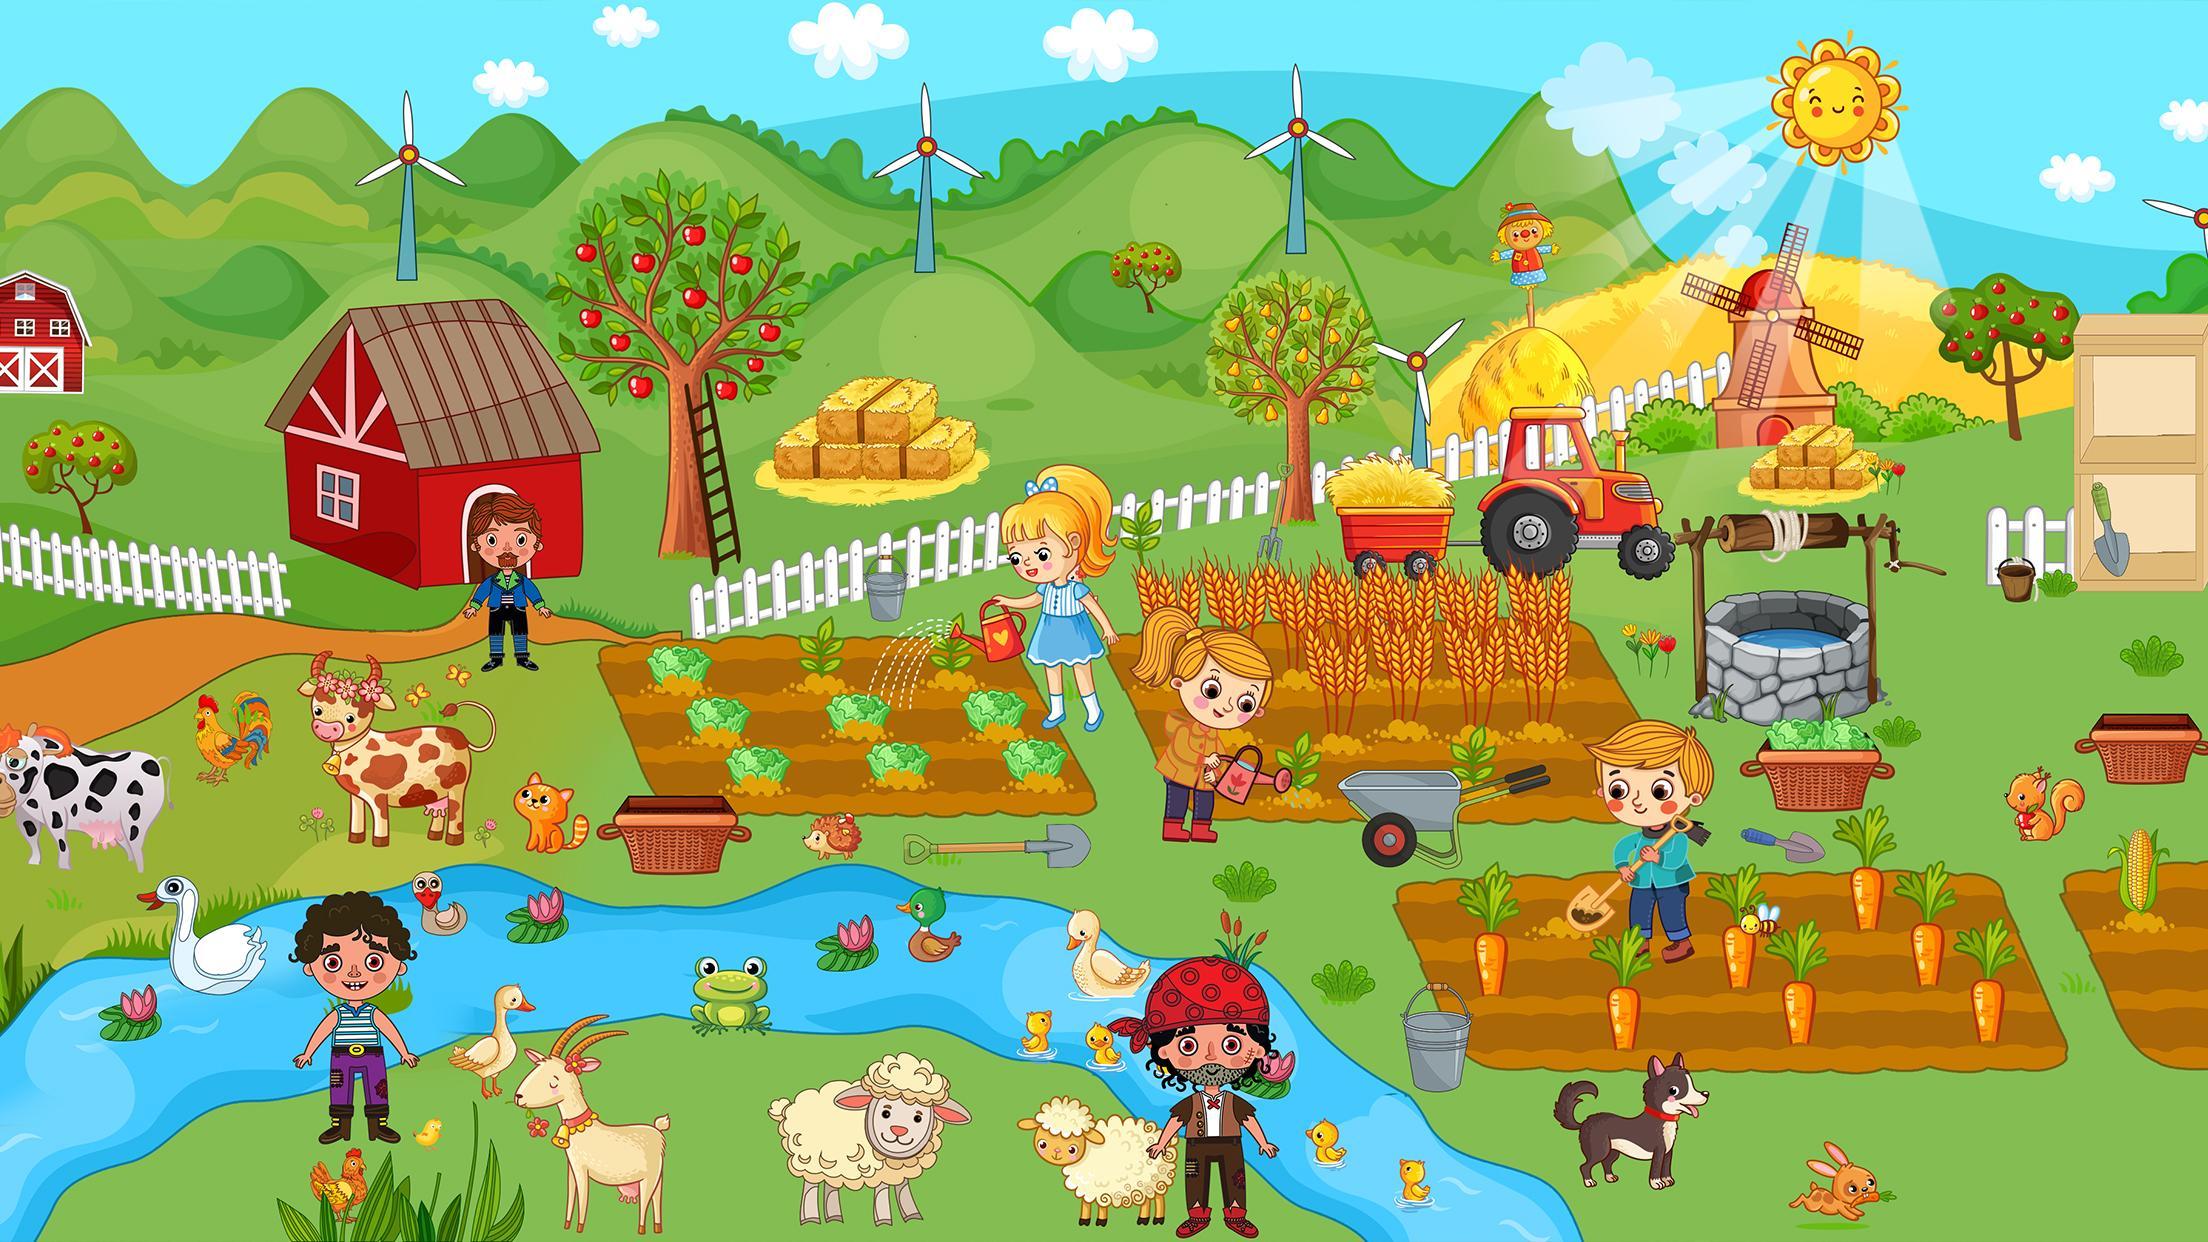 Screenshot 1 of Притворись, играй в фермерскую деревенскую жизнь 1.0.14